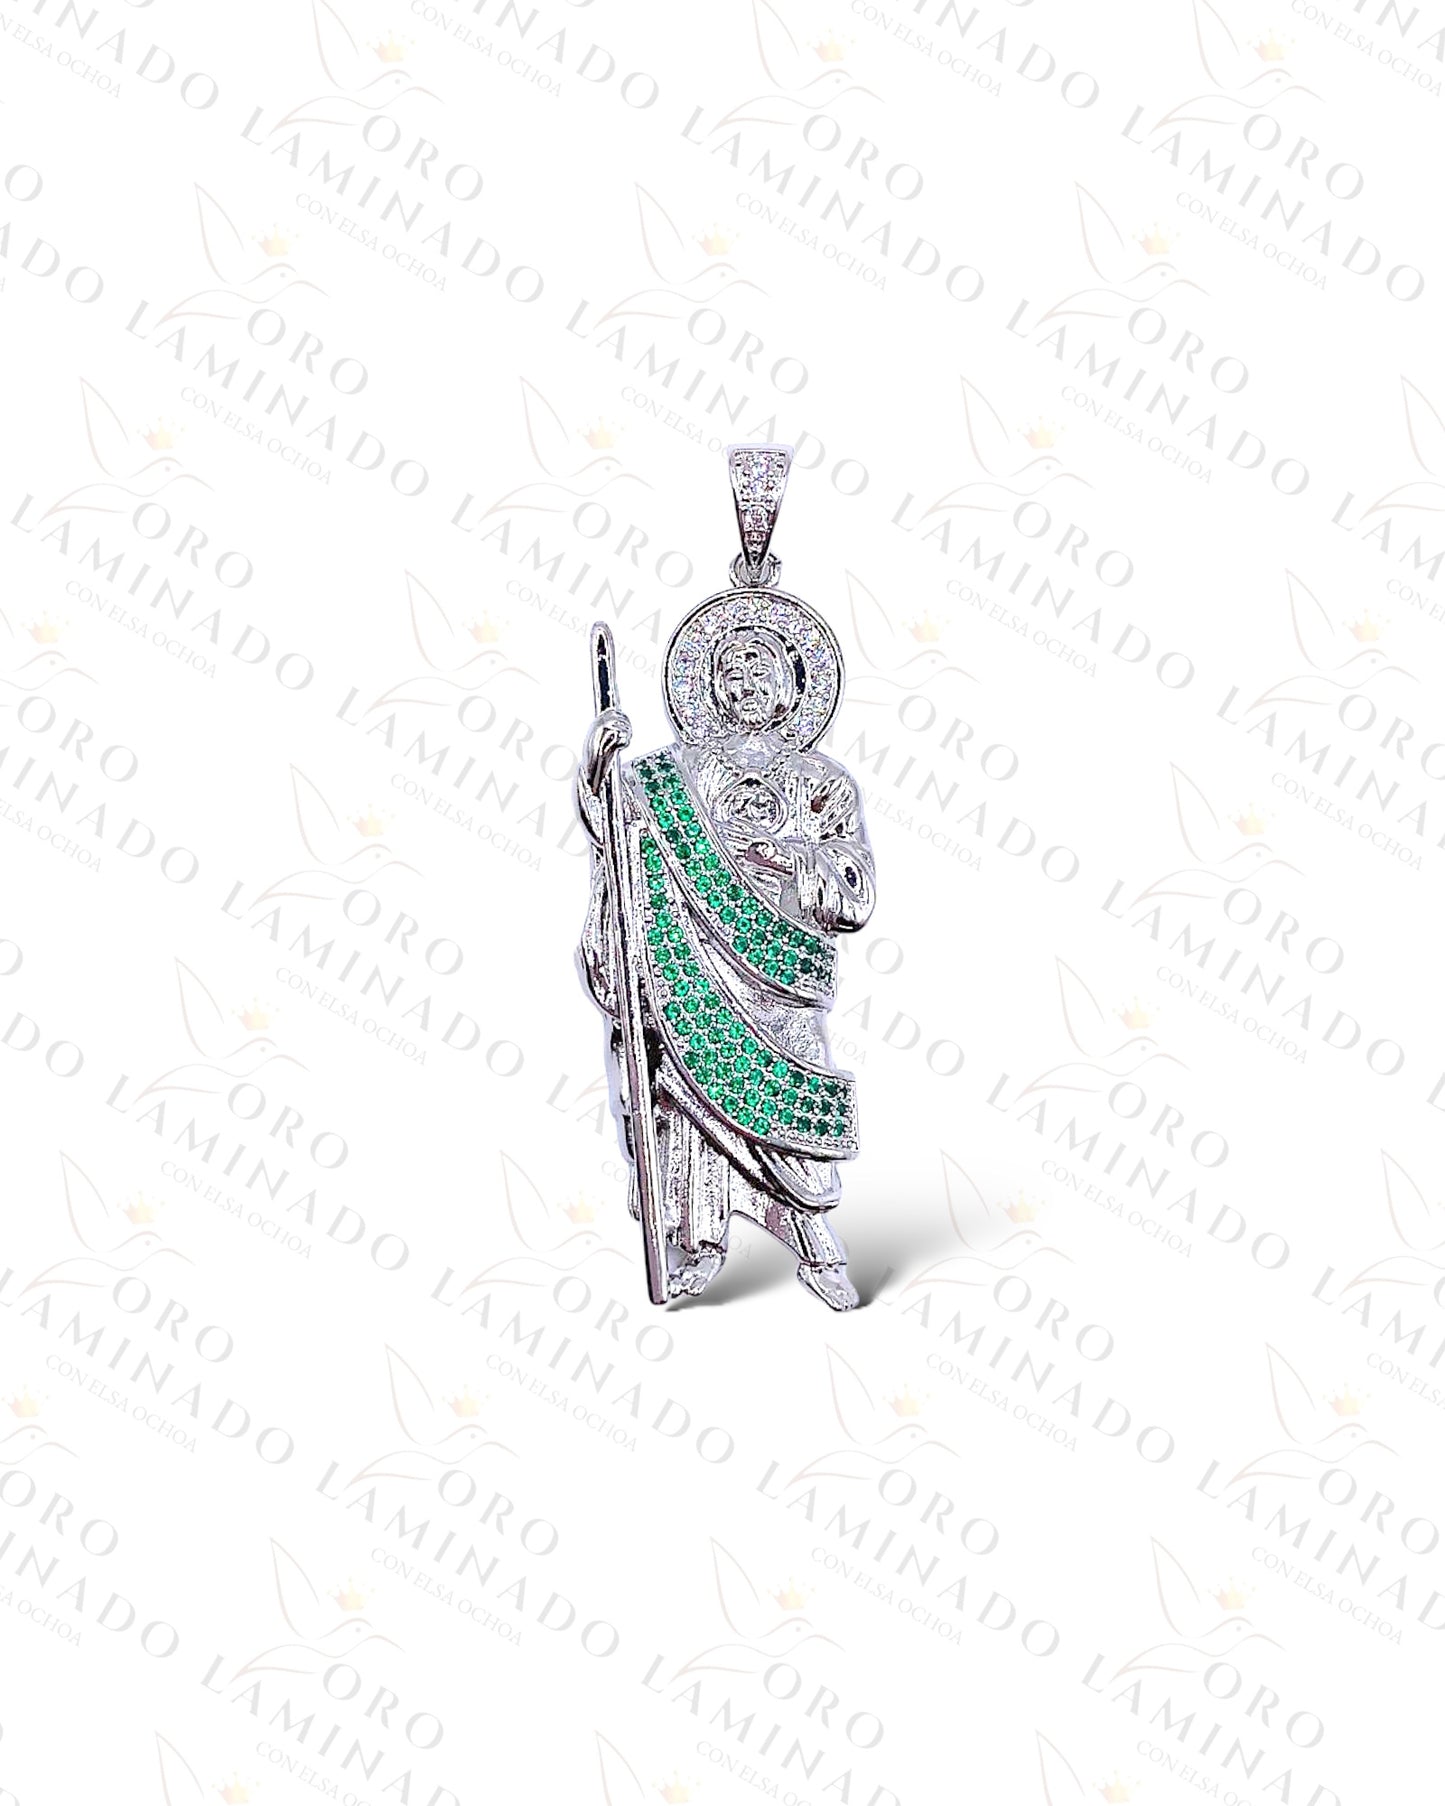 Silver pendant of San Judas Tadeo Y327